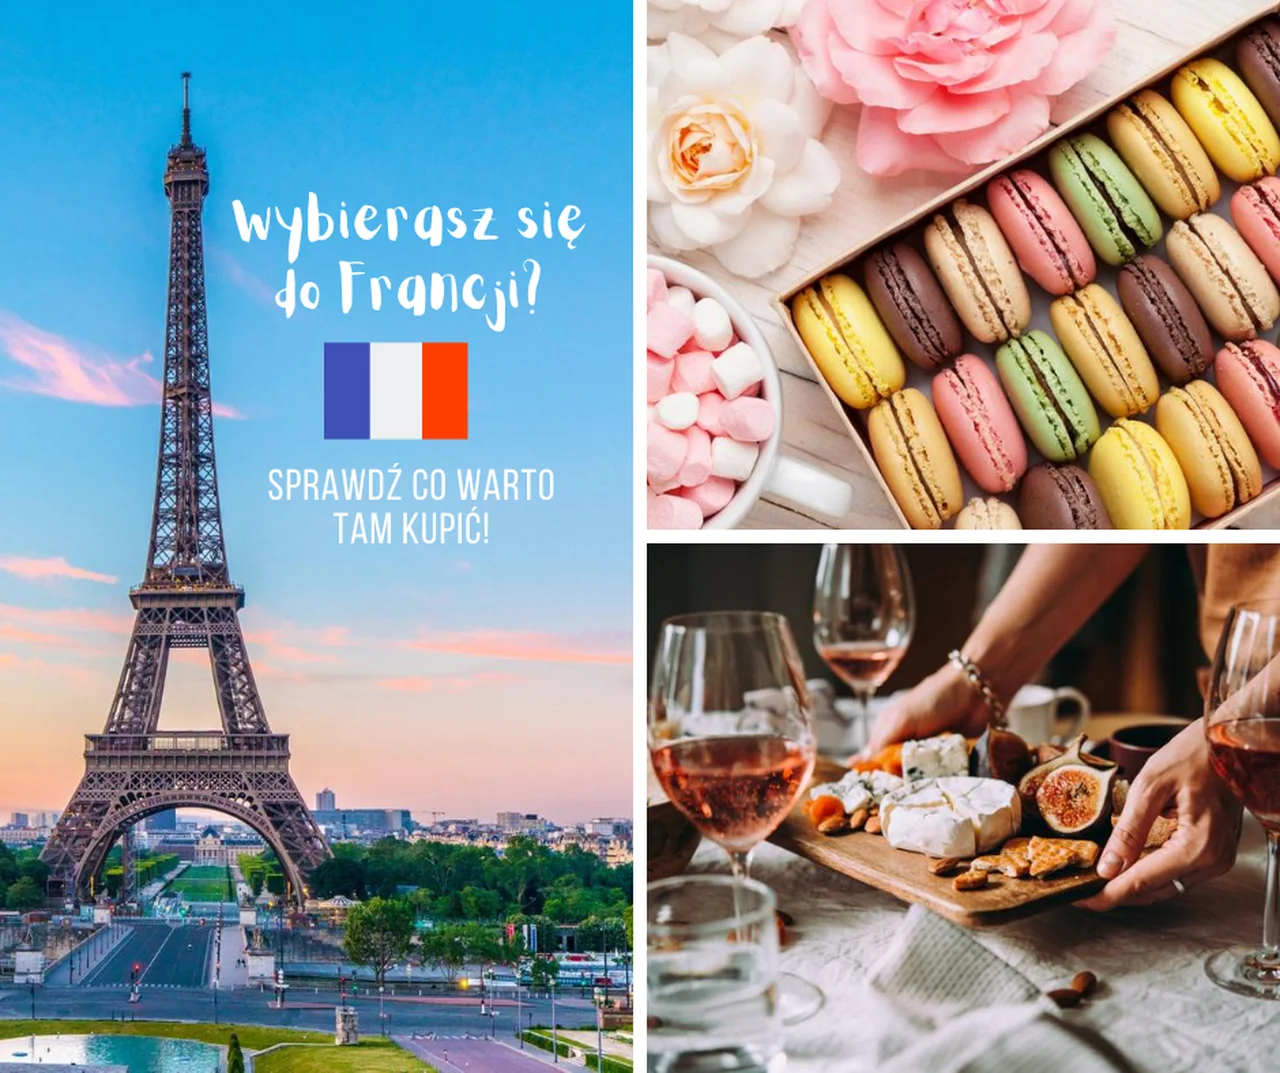 10 rzeczy, które warto kupić w Paryżu i we Francji. Co przywieźć?